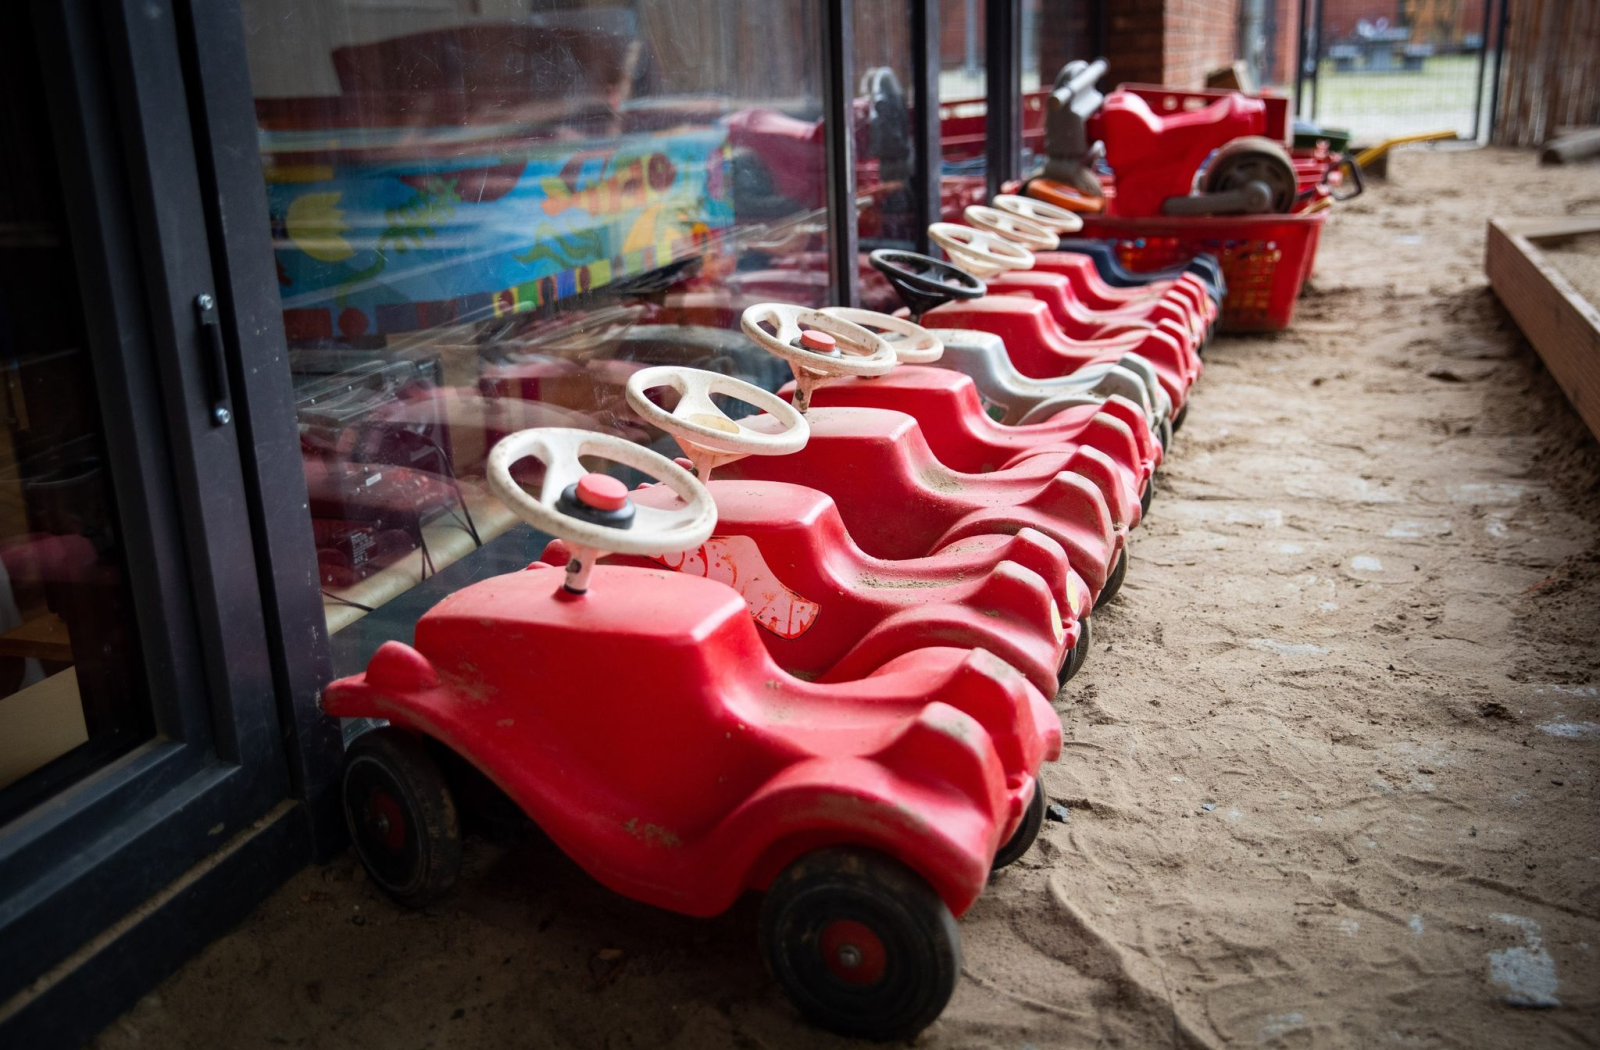 Mehrere Bobbycars stehen auf dem Spielplatz eines Kindergartens.